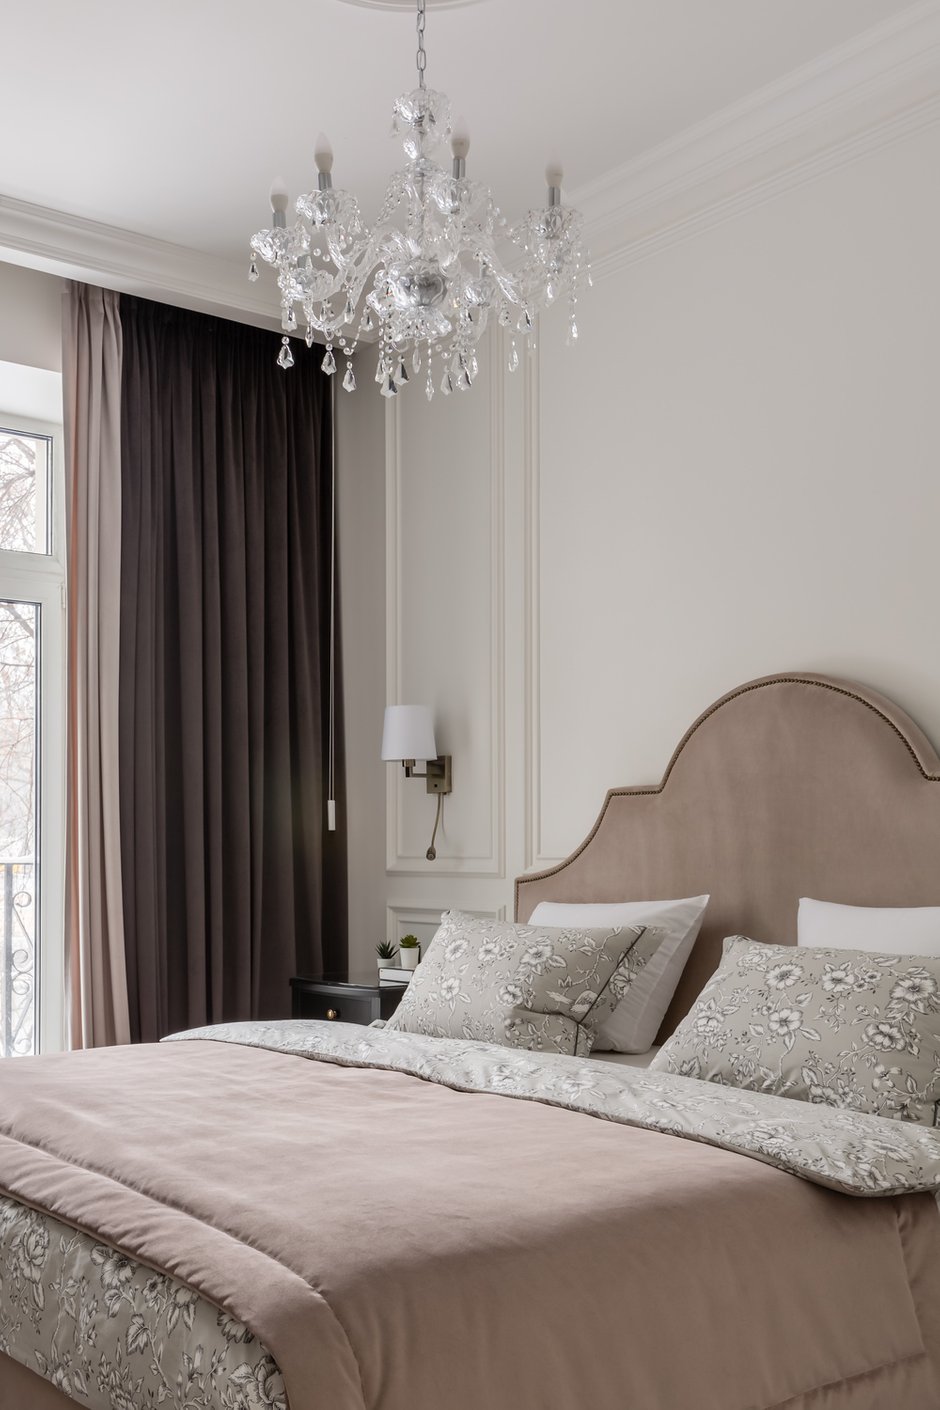 Фотография: Спальня в стиле Классический, Квартира, Проект недели, Москва, 2 комнаты, 60-90 метров, Muzahouse – фото на INMYROOM